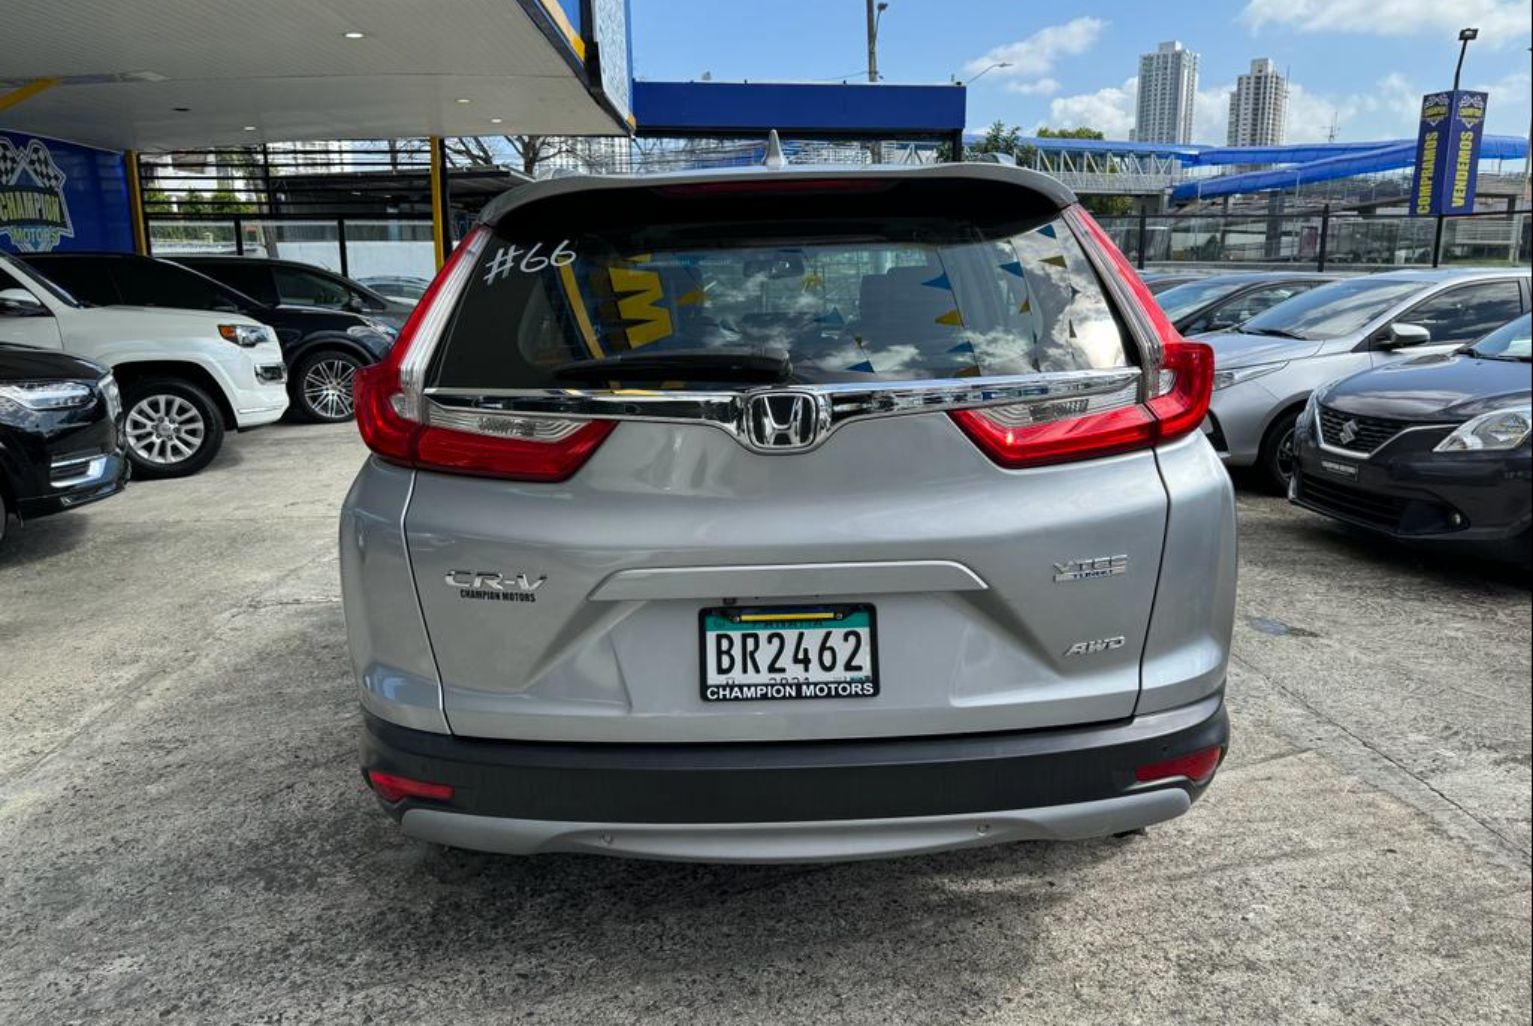 Honda CR-V 2018 Automático color Plateado, Imagen #5